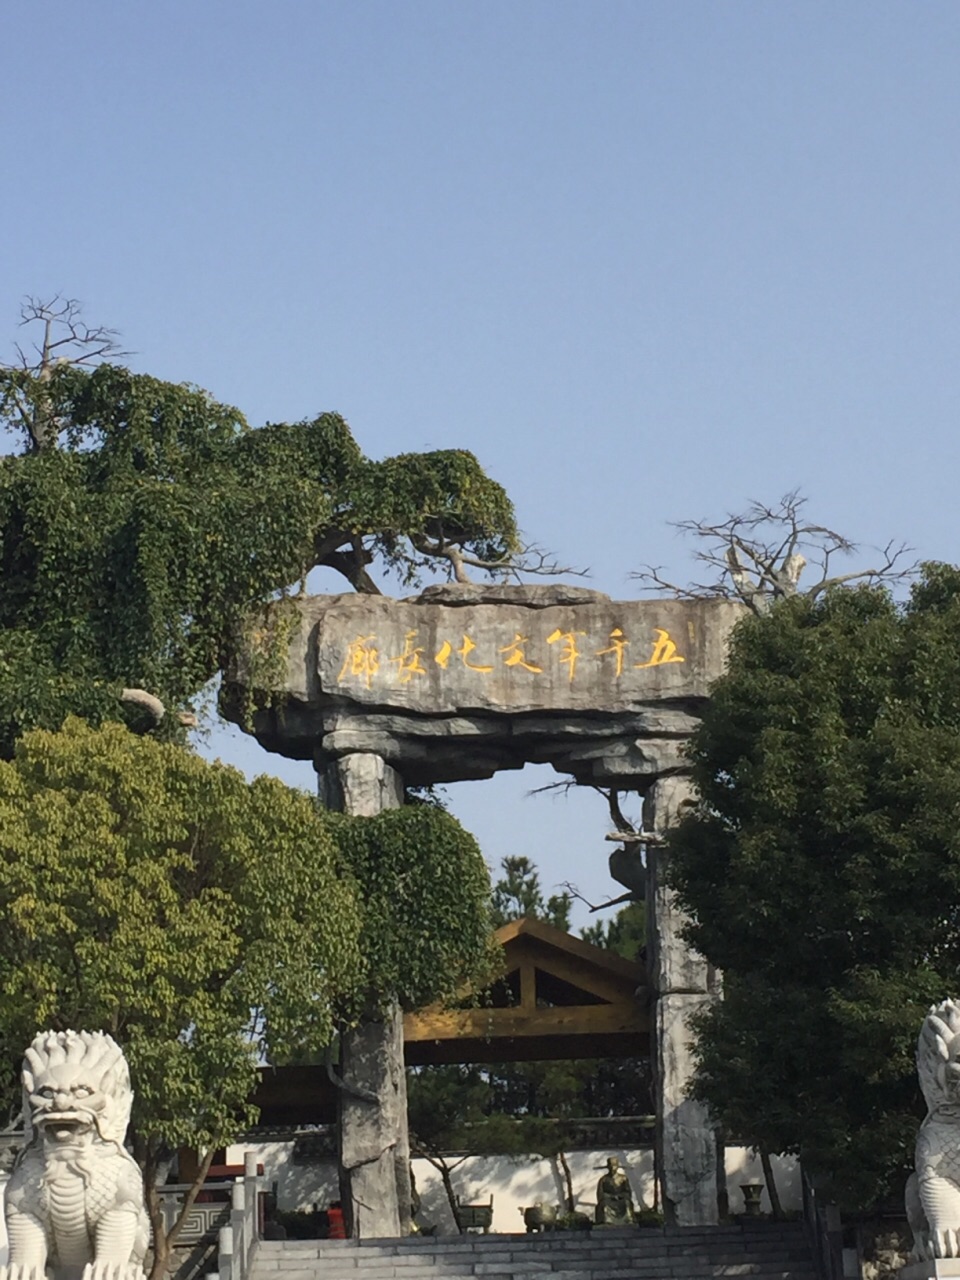 【携程攻略】安徽安庆太湖五千年文博园好玩吗,安徽园